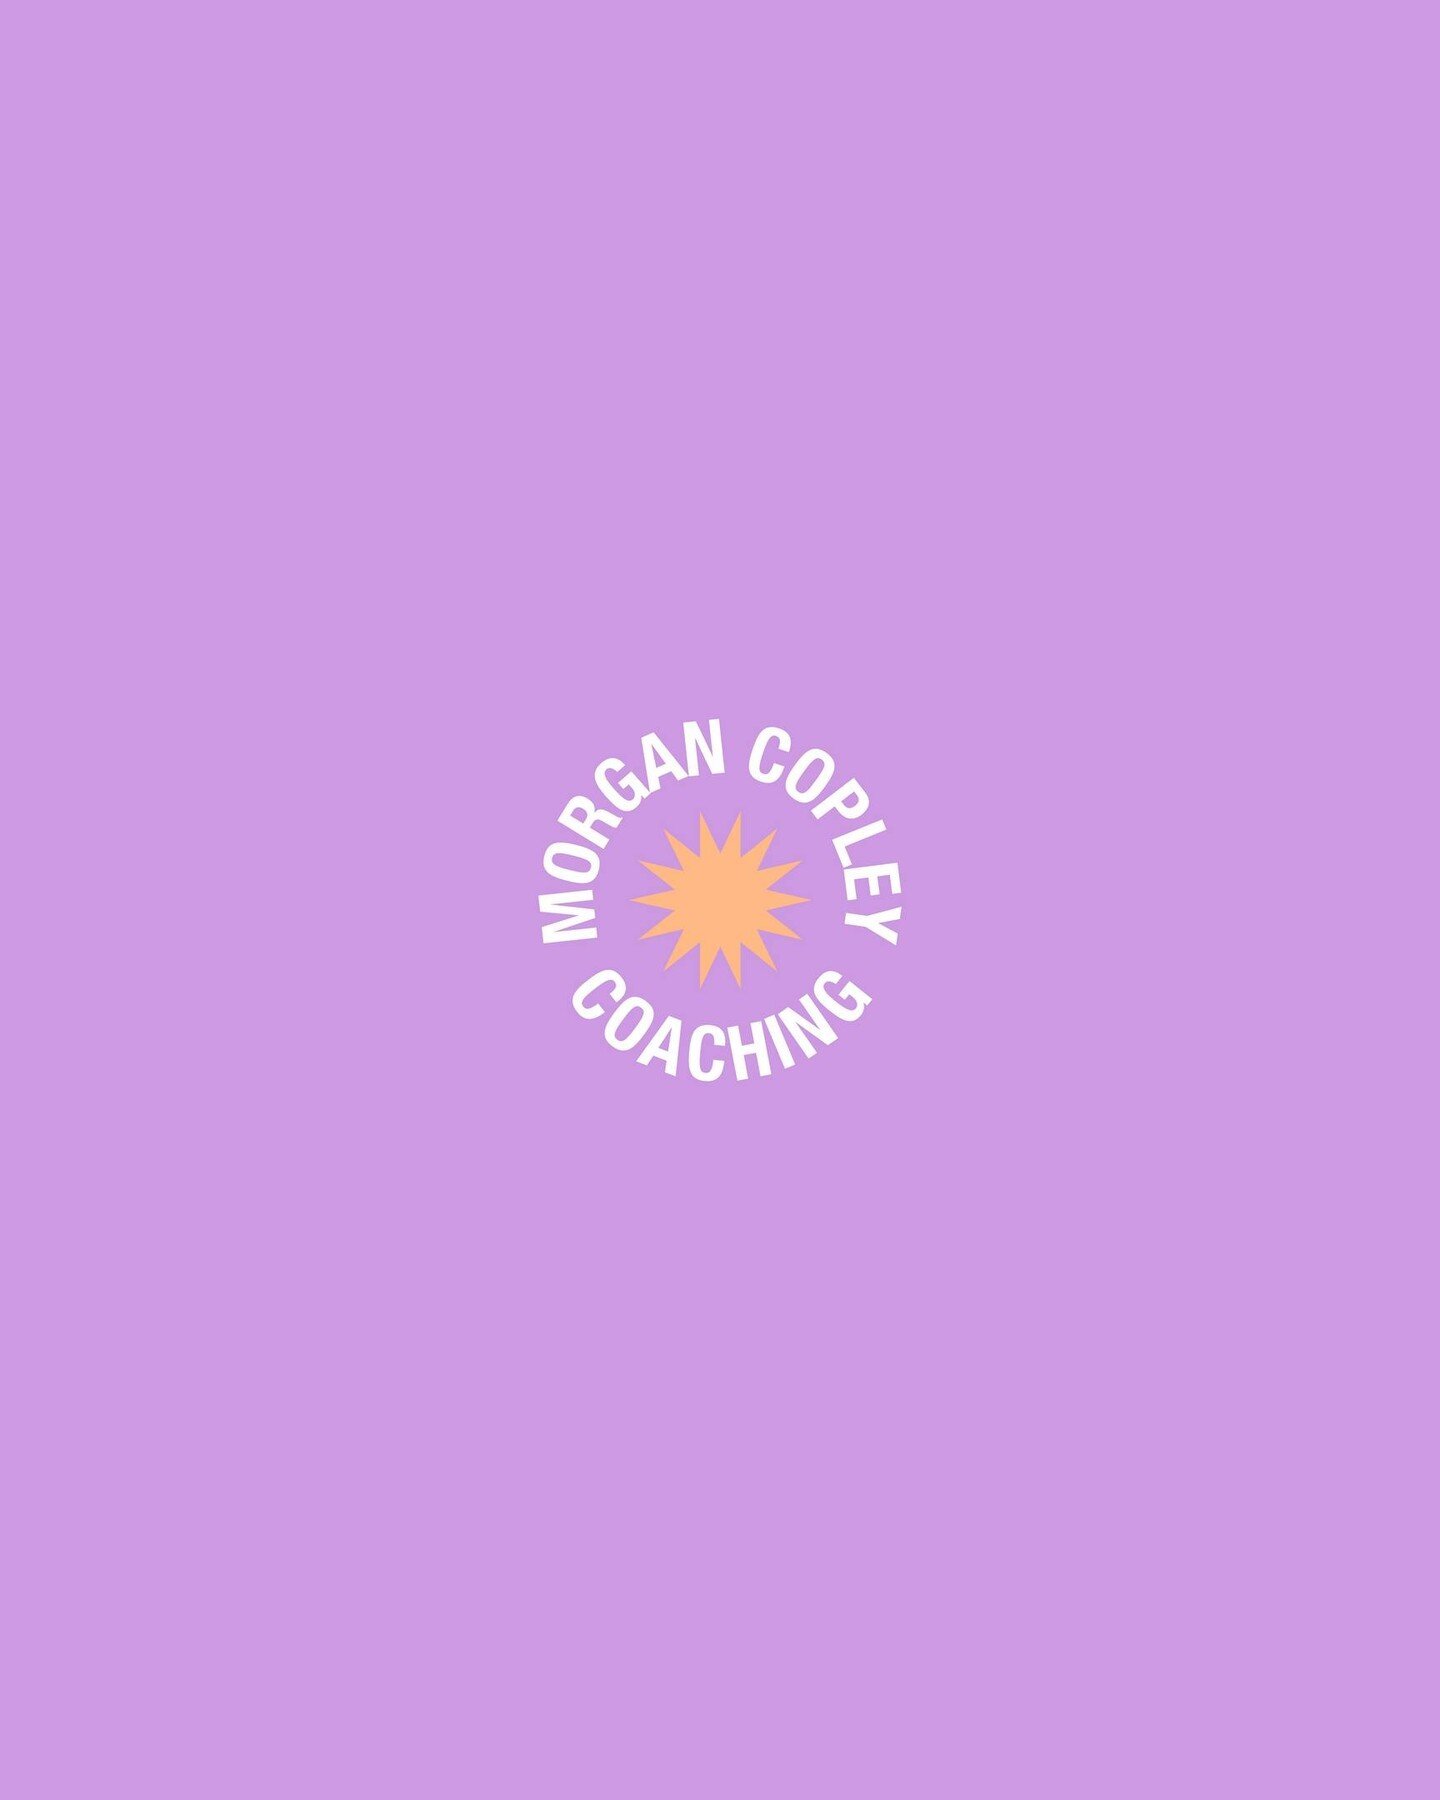 new branding for @morganncopley 🔥⁠
⁠
loving the pops of lavender &amp; orange 🥰